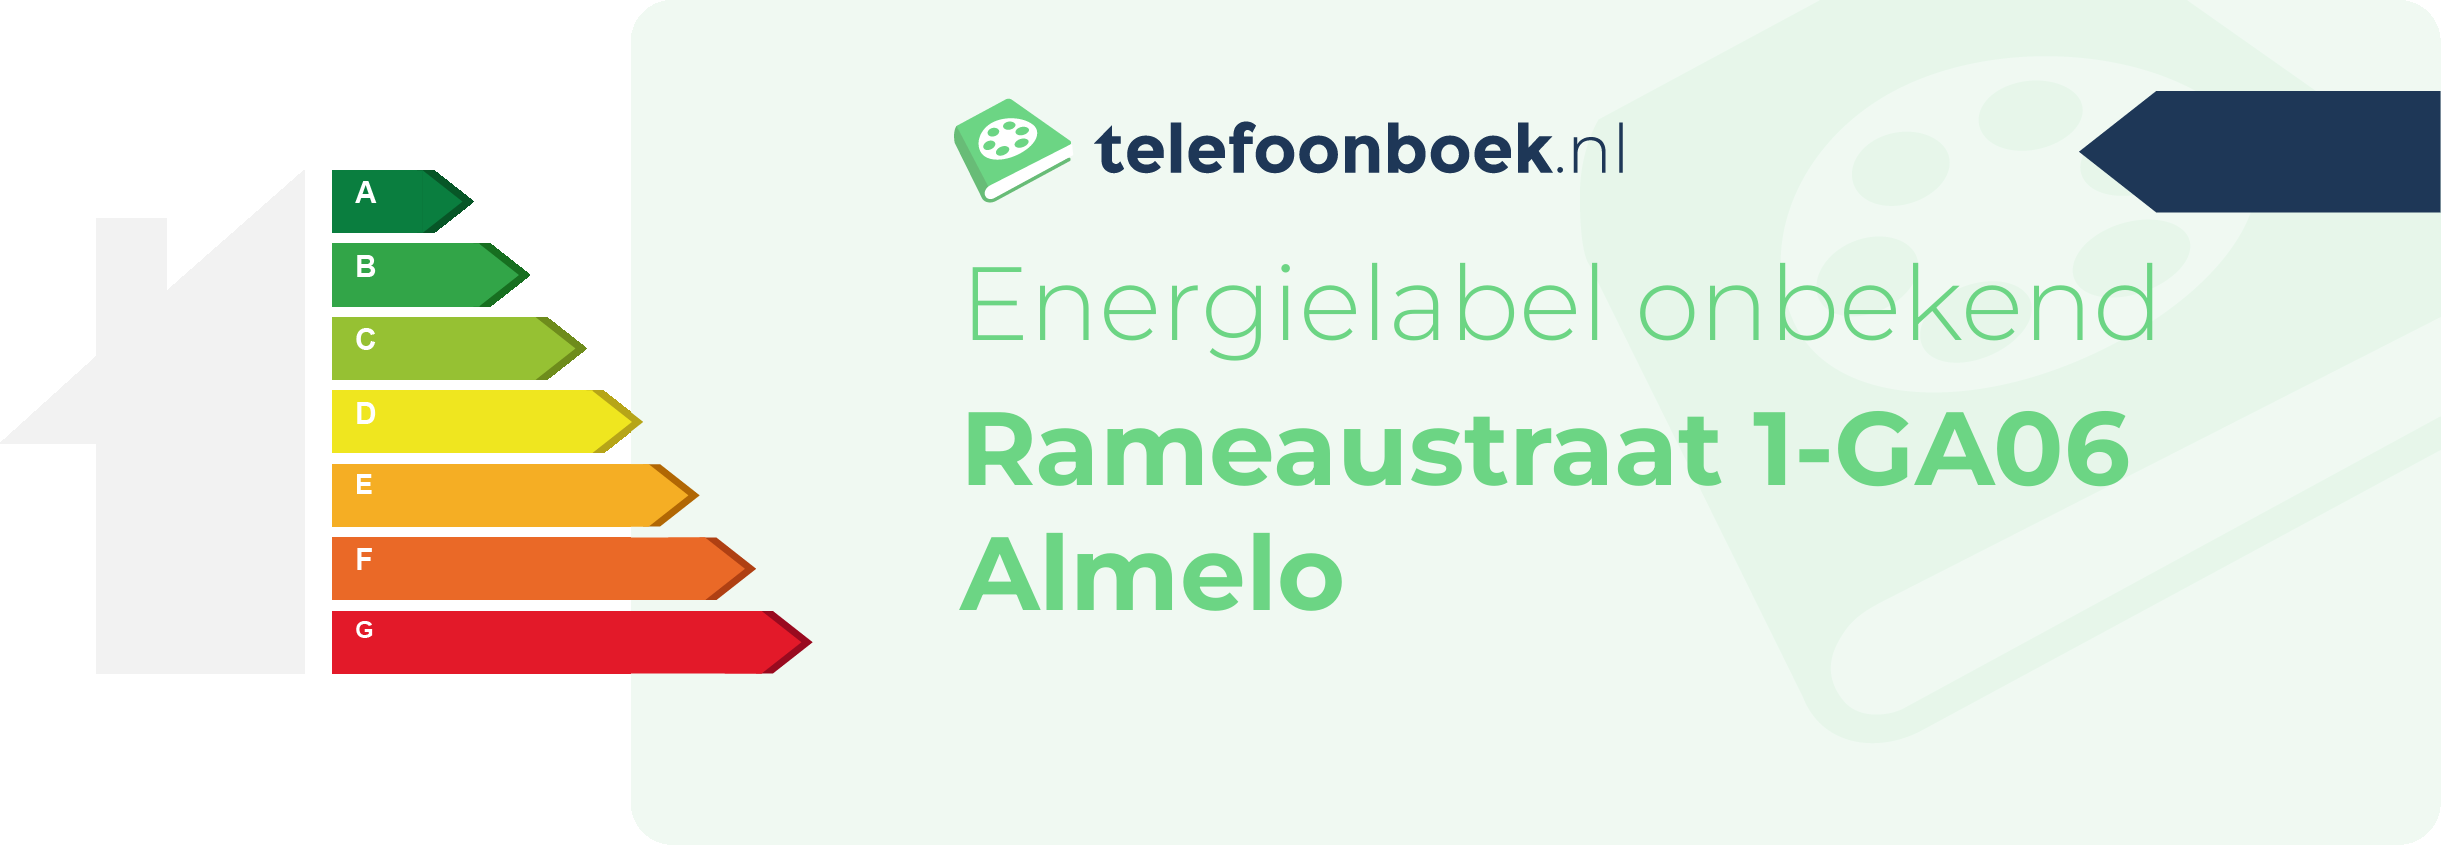 Energielabel Rameaustraat 1-GA06 Almelo